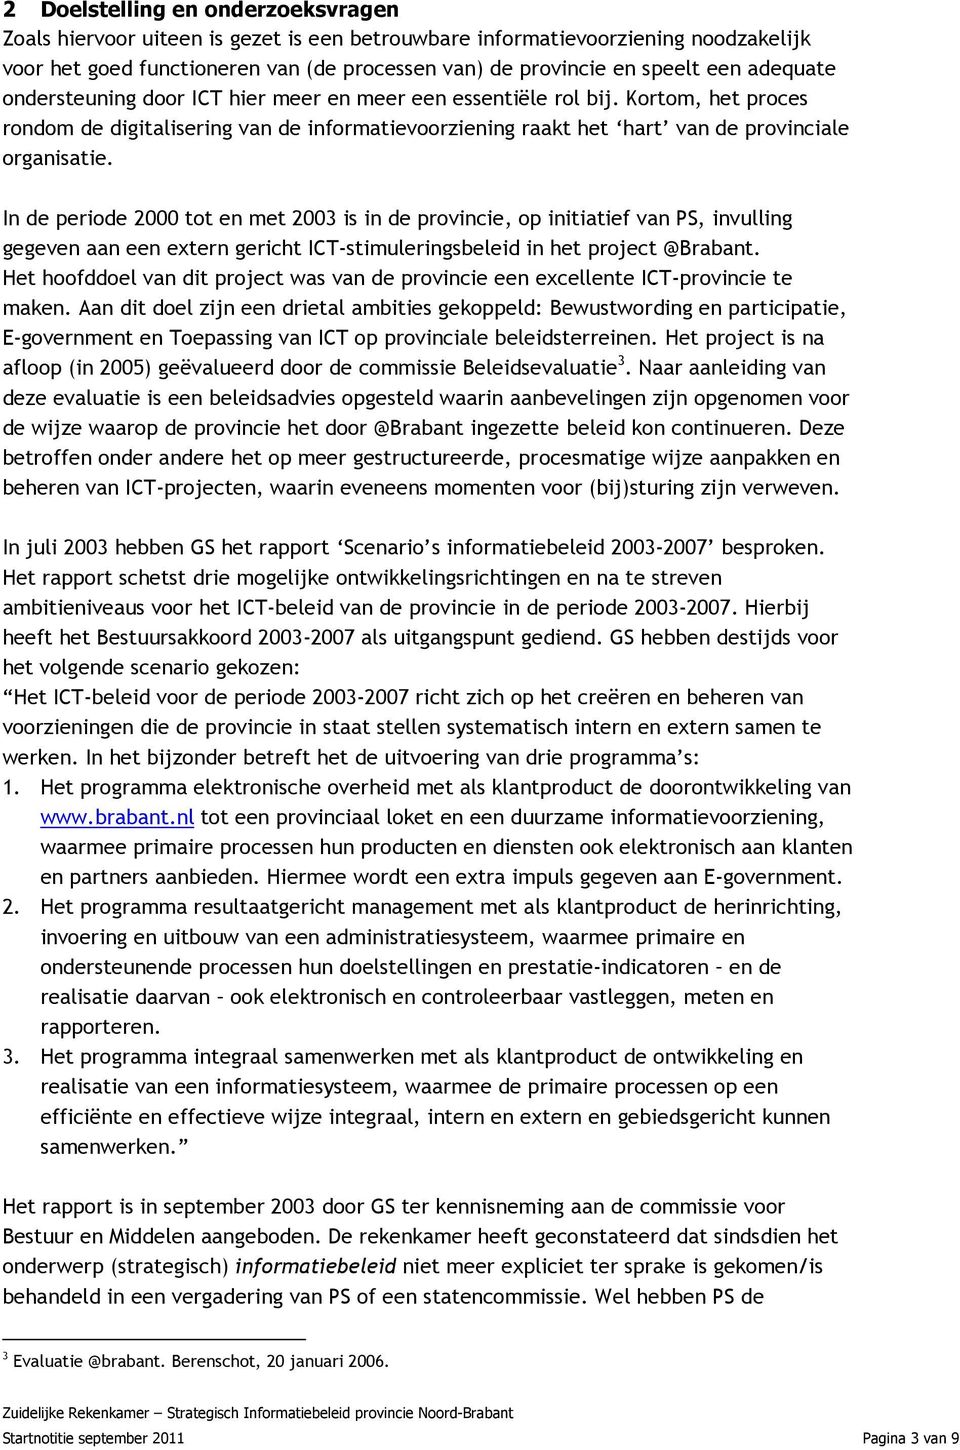 In de periode 2000 tot en met 2003 is in de provincie, op initiatief van PS, invulling gegeven aan een extern gericht ICT-stimuleringsbeleid in het project @Brabant.